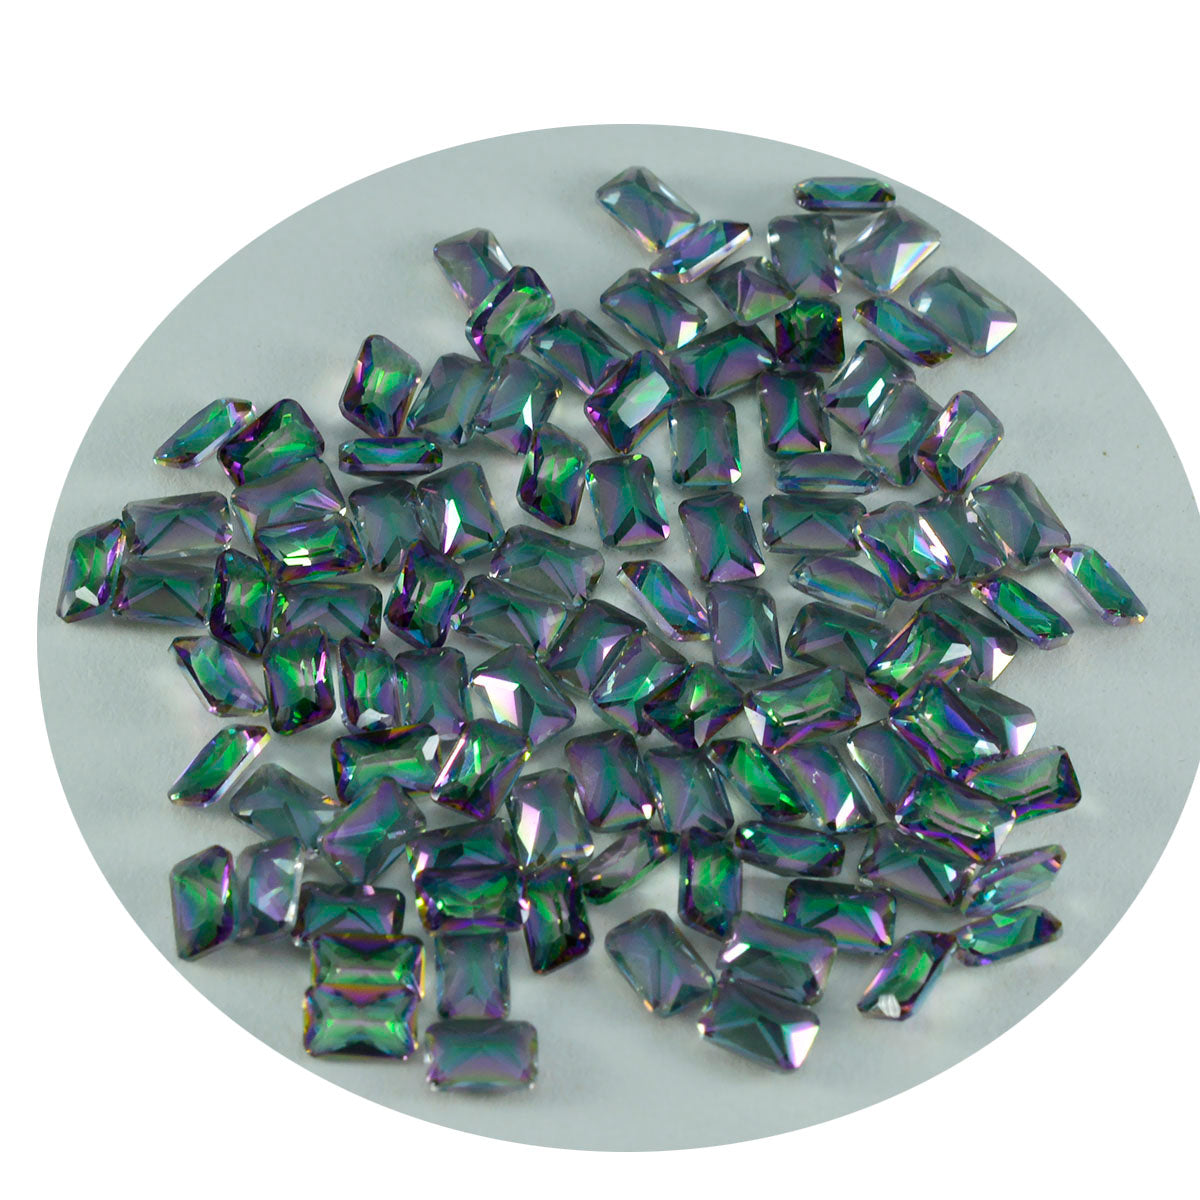 riyogems 1 шт., разноцветный мистический кварц, граненый 3x5 мм, восьмиугольная форма, красивый качественный драгоценный камень